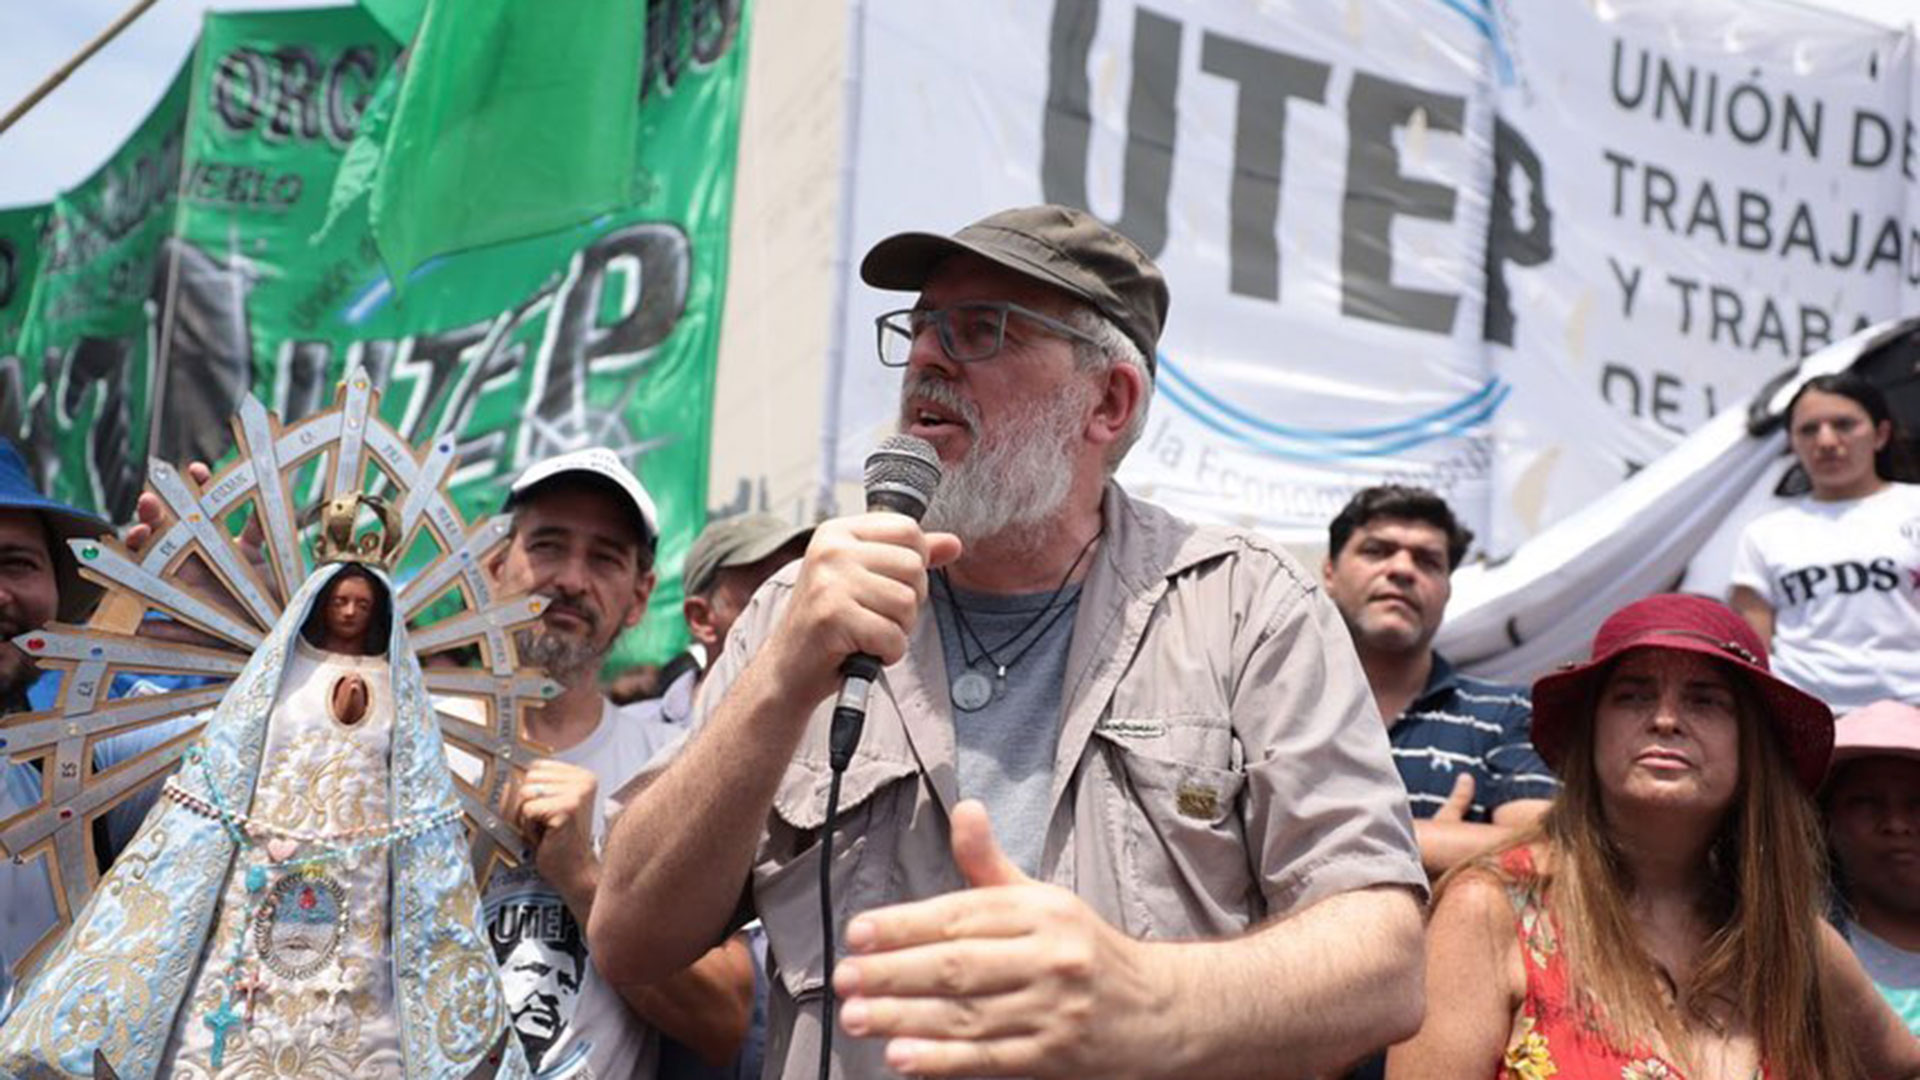 Esteban Castro, el secretario general de la UTEP, encabezó las marchas contra el Gobierno por su política social: "Este bono no es ni cristiano ni peronista”, sostuvo